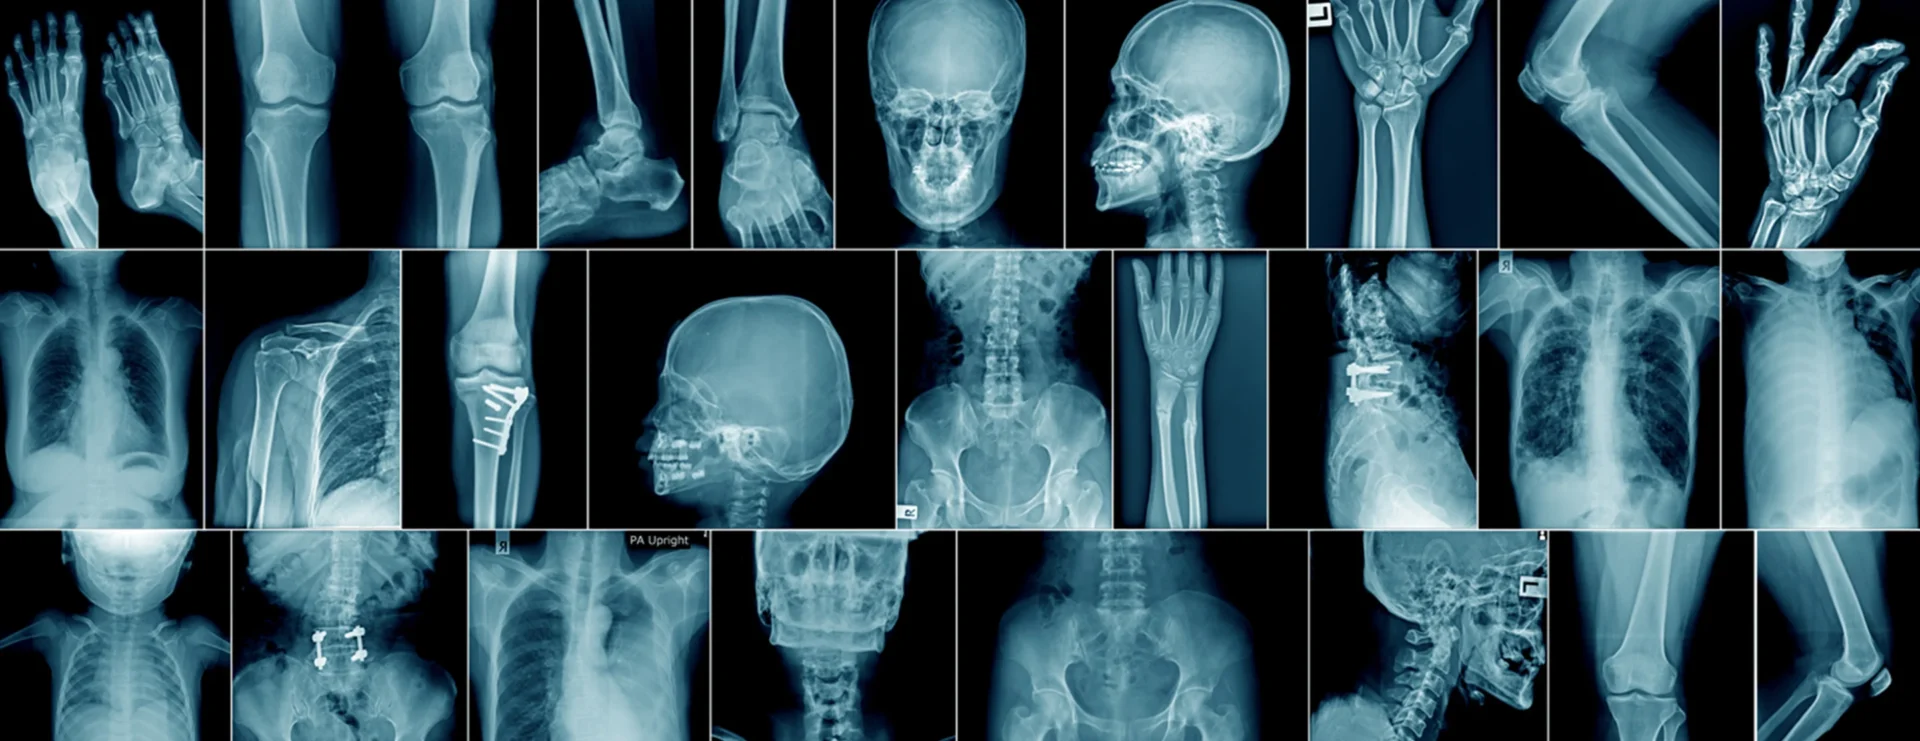 X Ray Skeleton